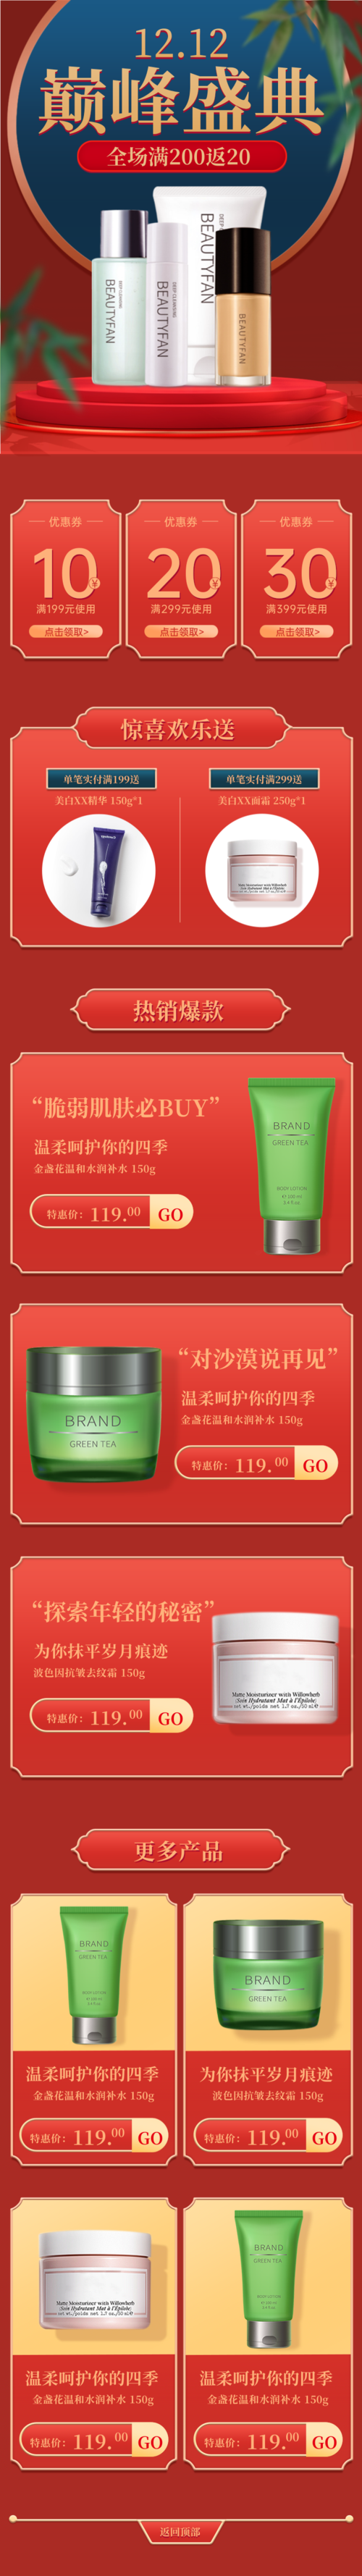 中国风双十二电商促销美妆护肤